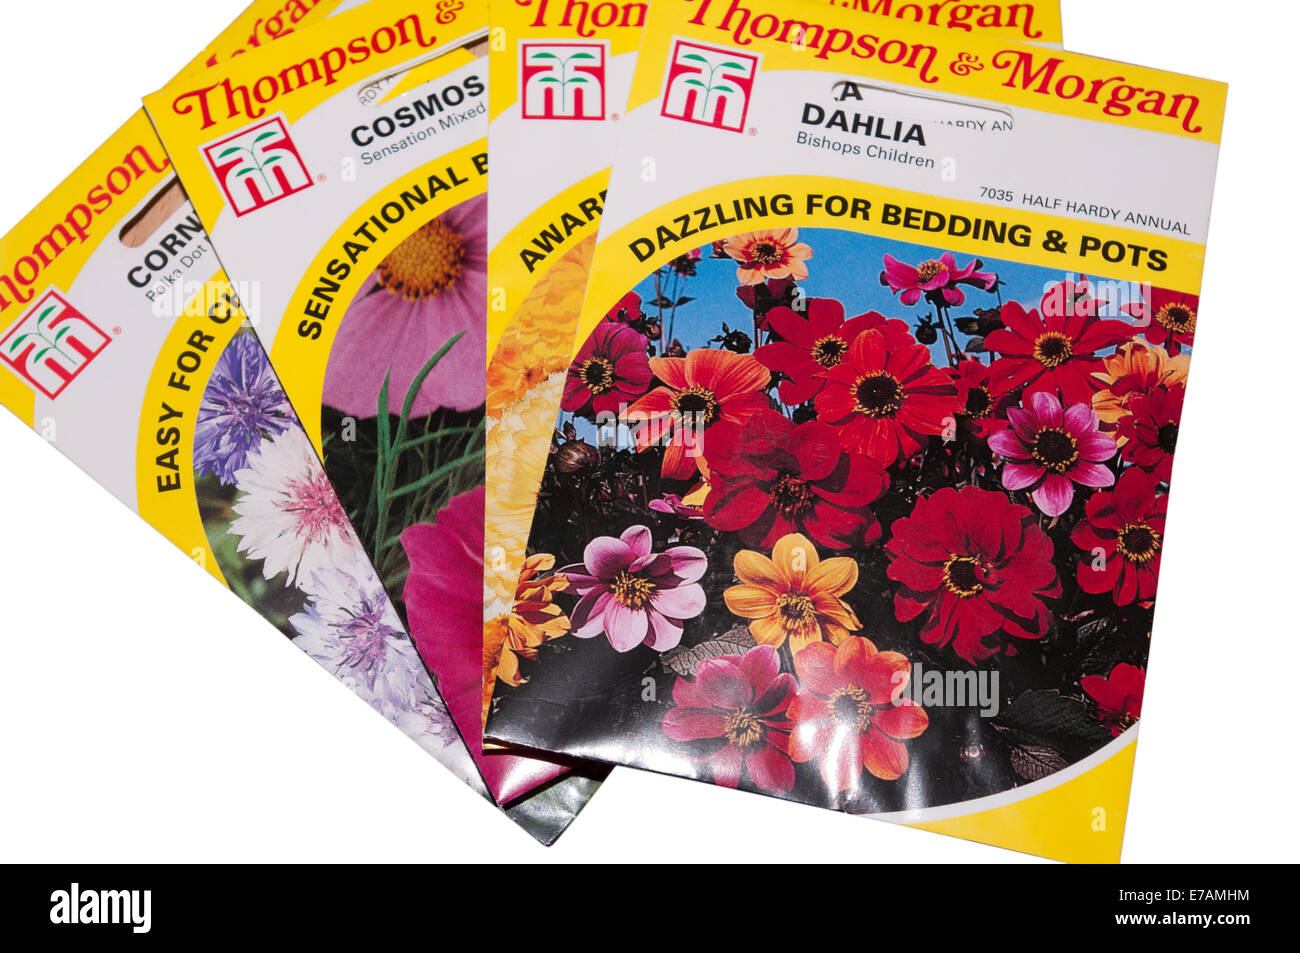 Pacchetti di semi di fiori da Thompson e Morgan Foto Stock